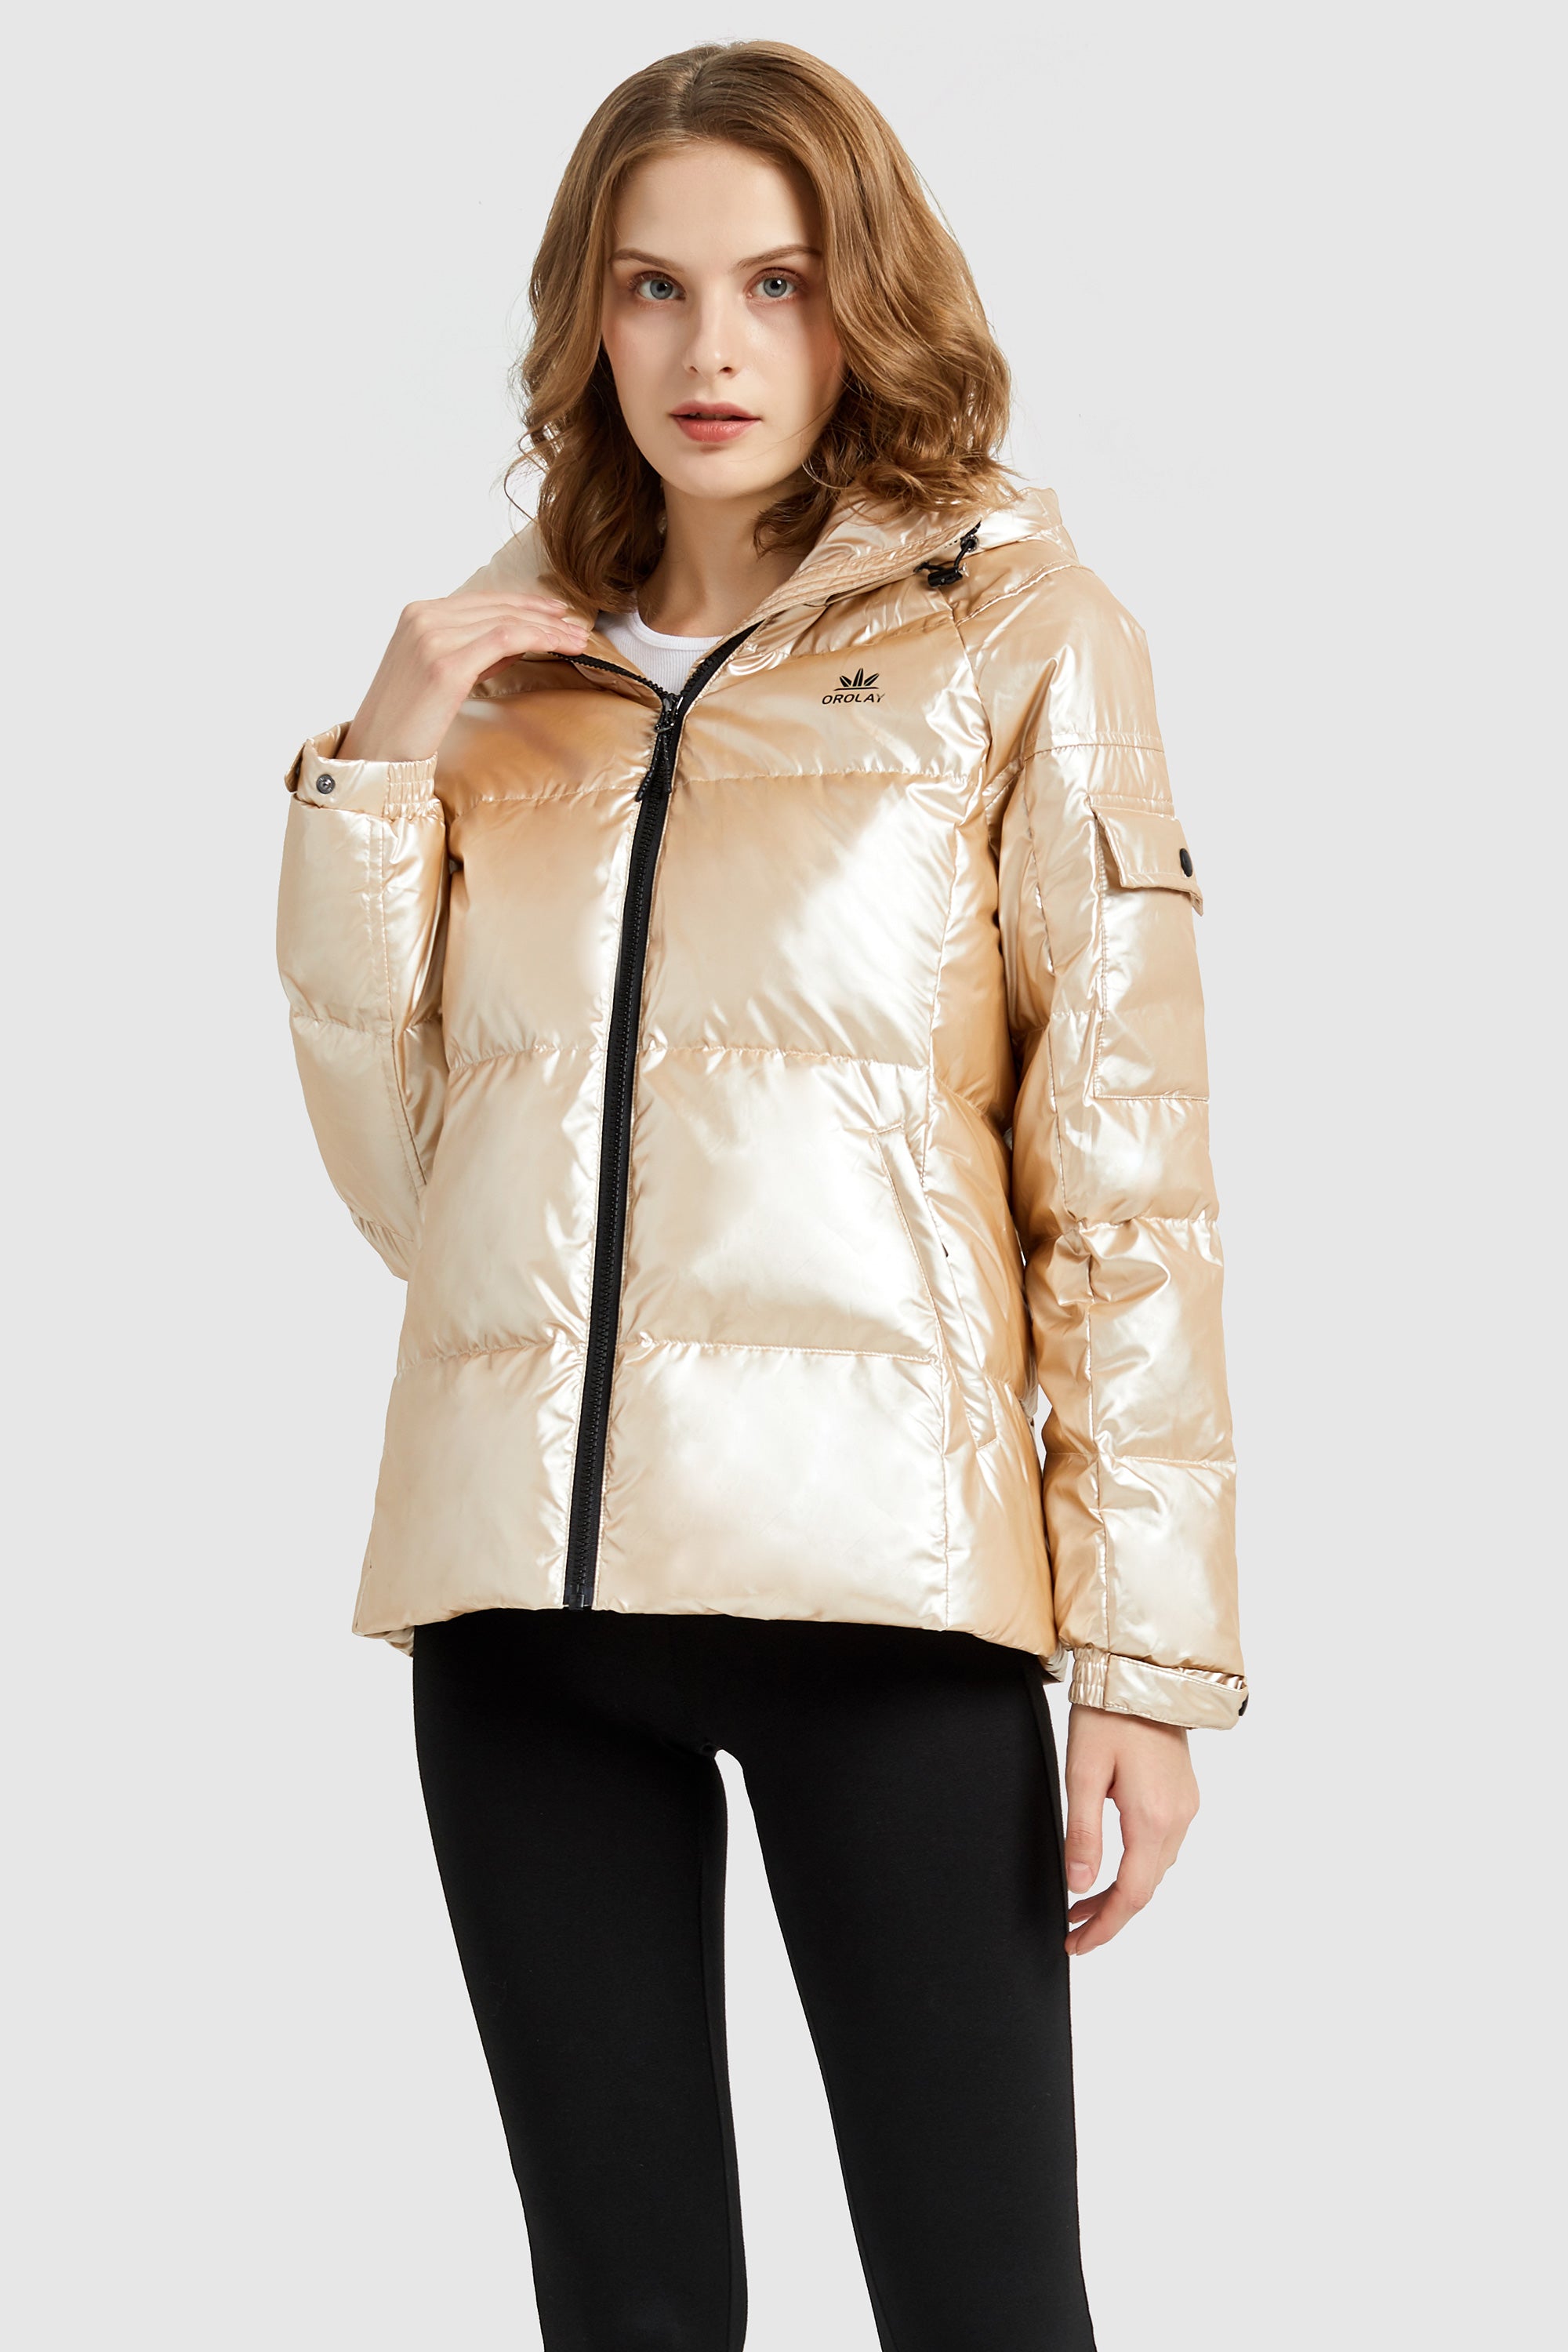 metallized hooded jacket